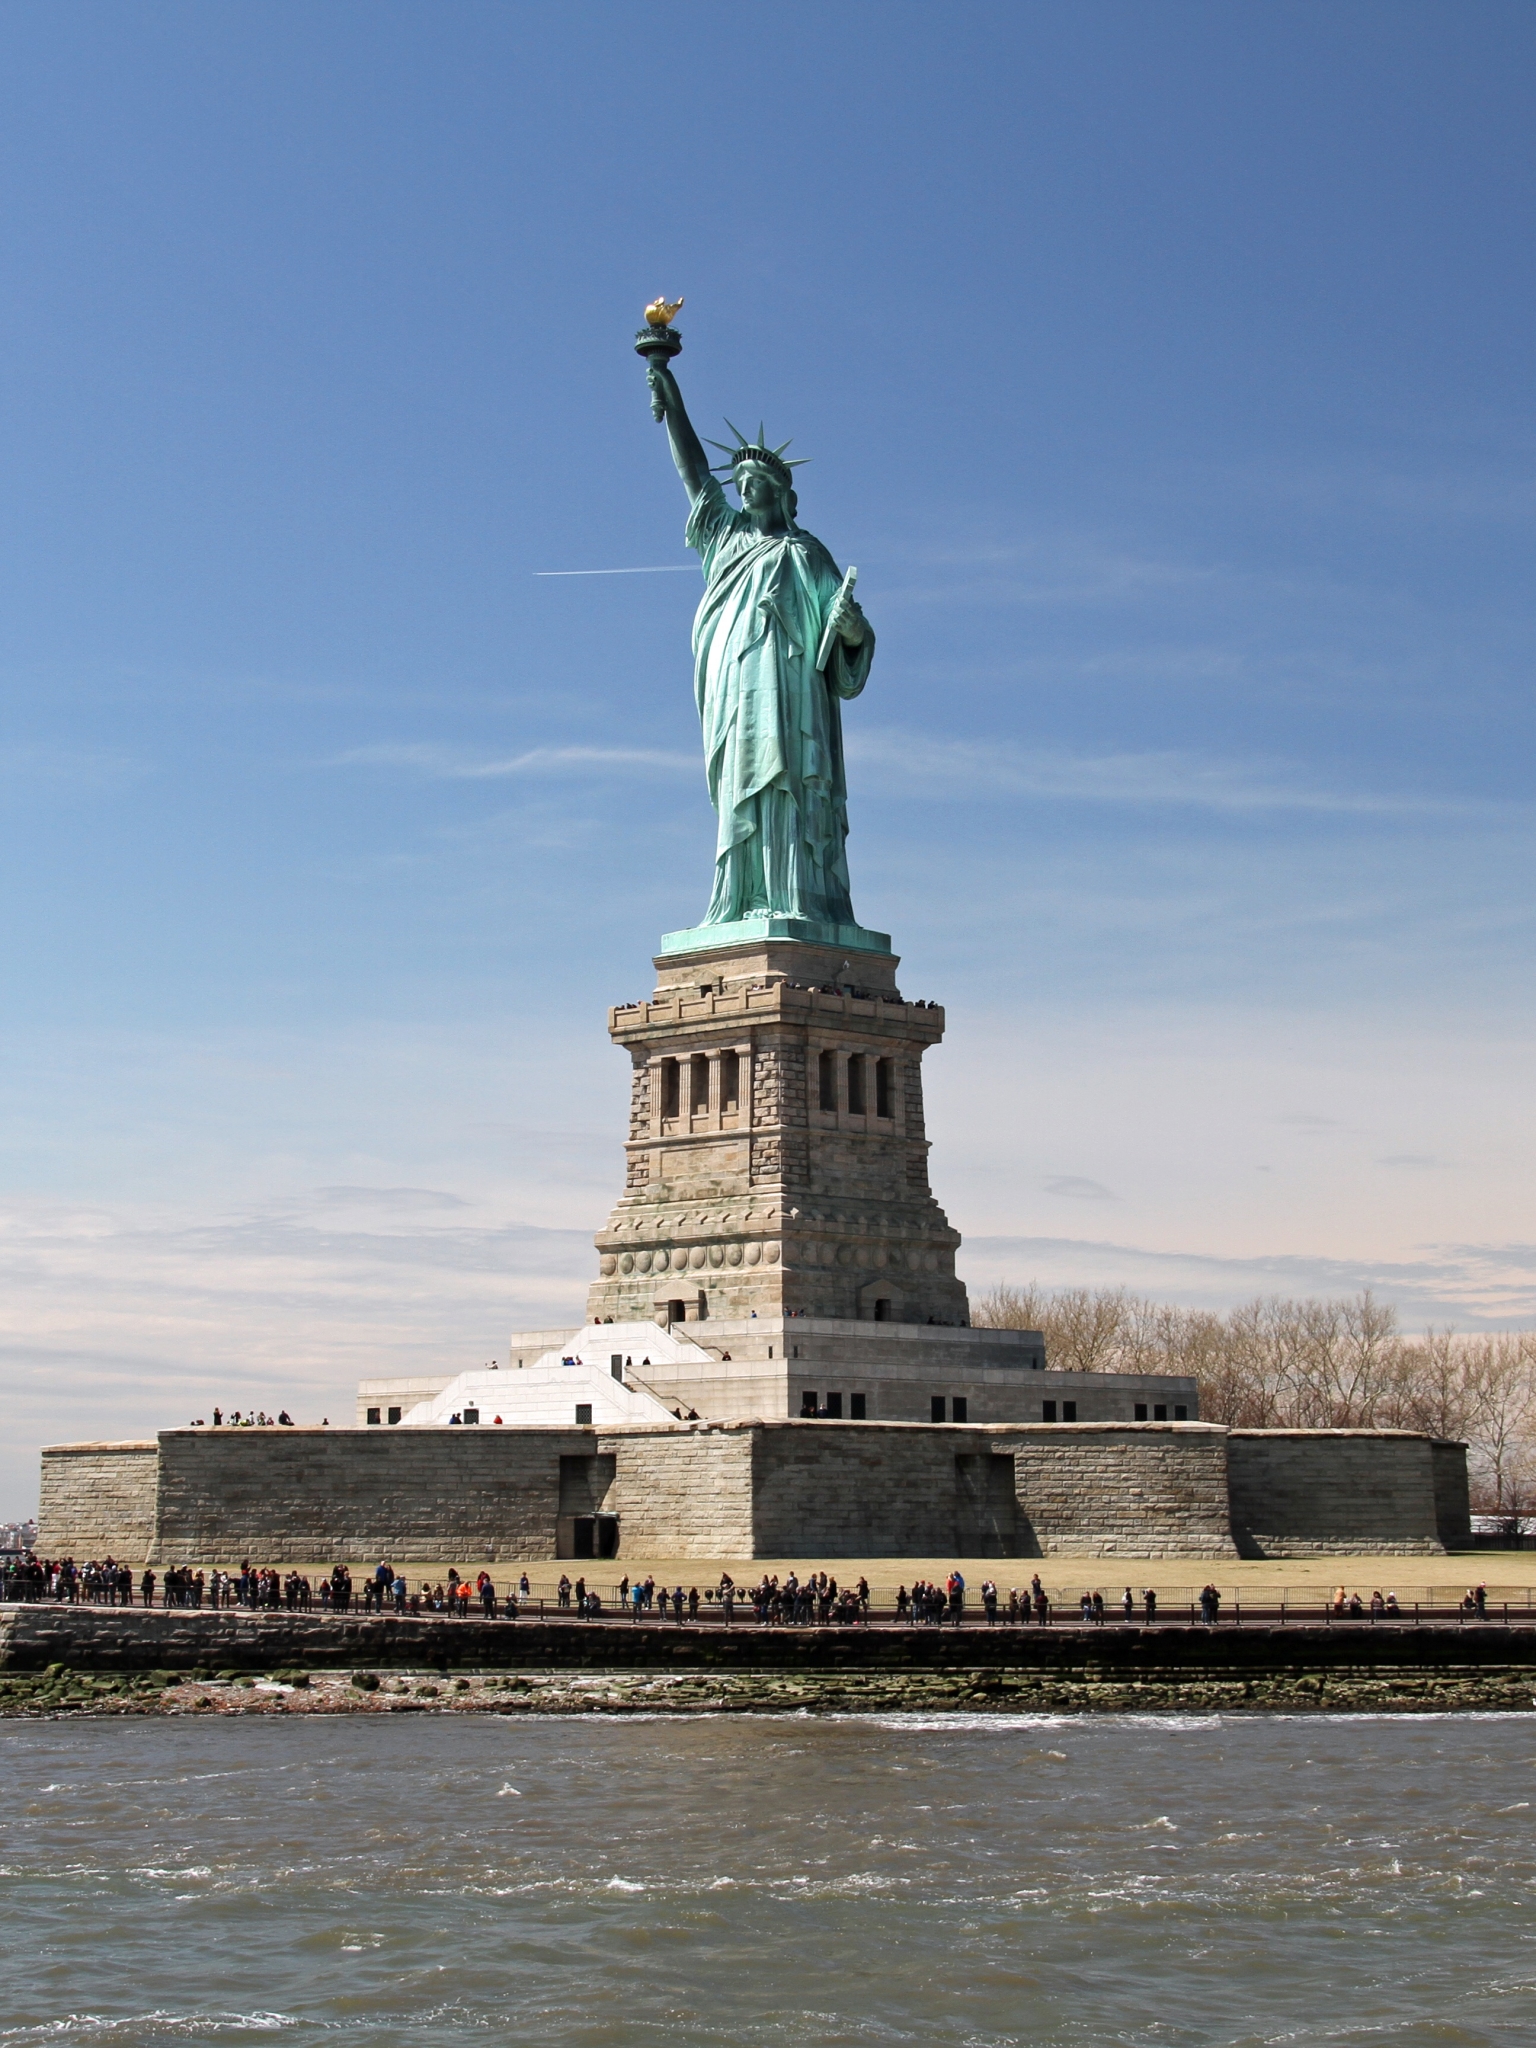 Скачать картинку Статуя Свободы, Сша, Нью Йорк, Памятник, Сделано Человеком в телефон бесплатно.